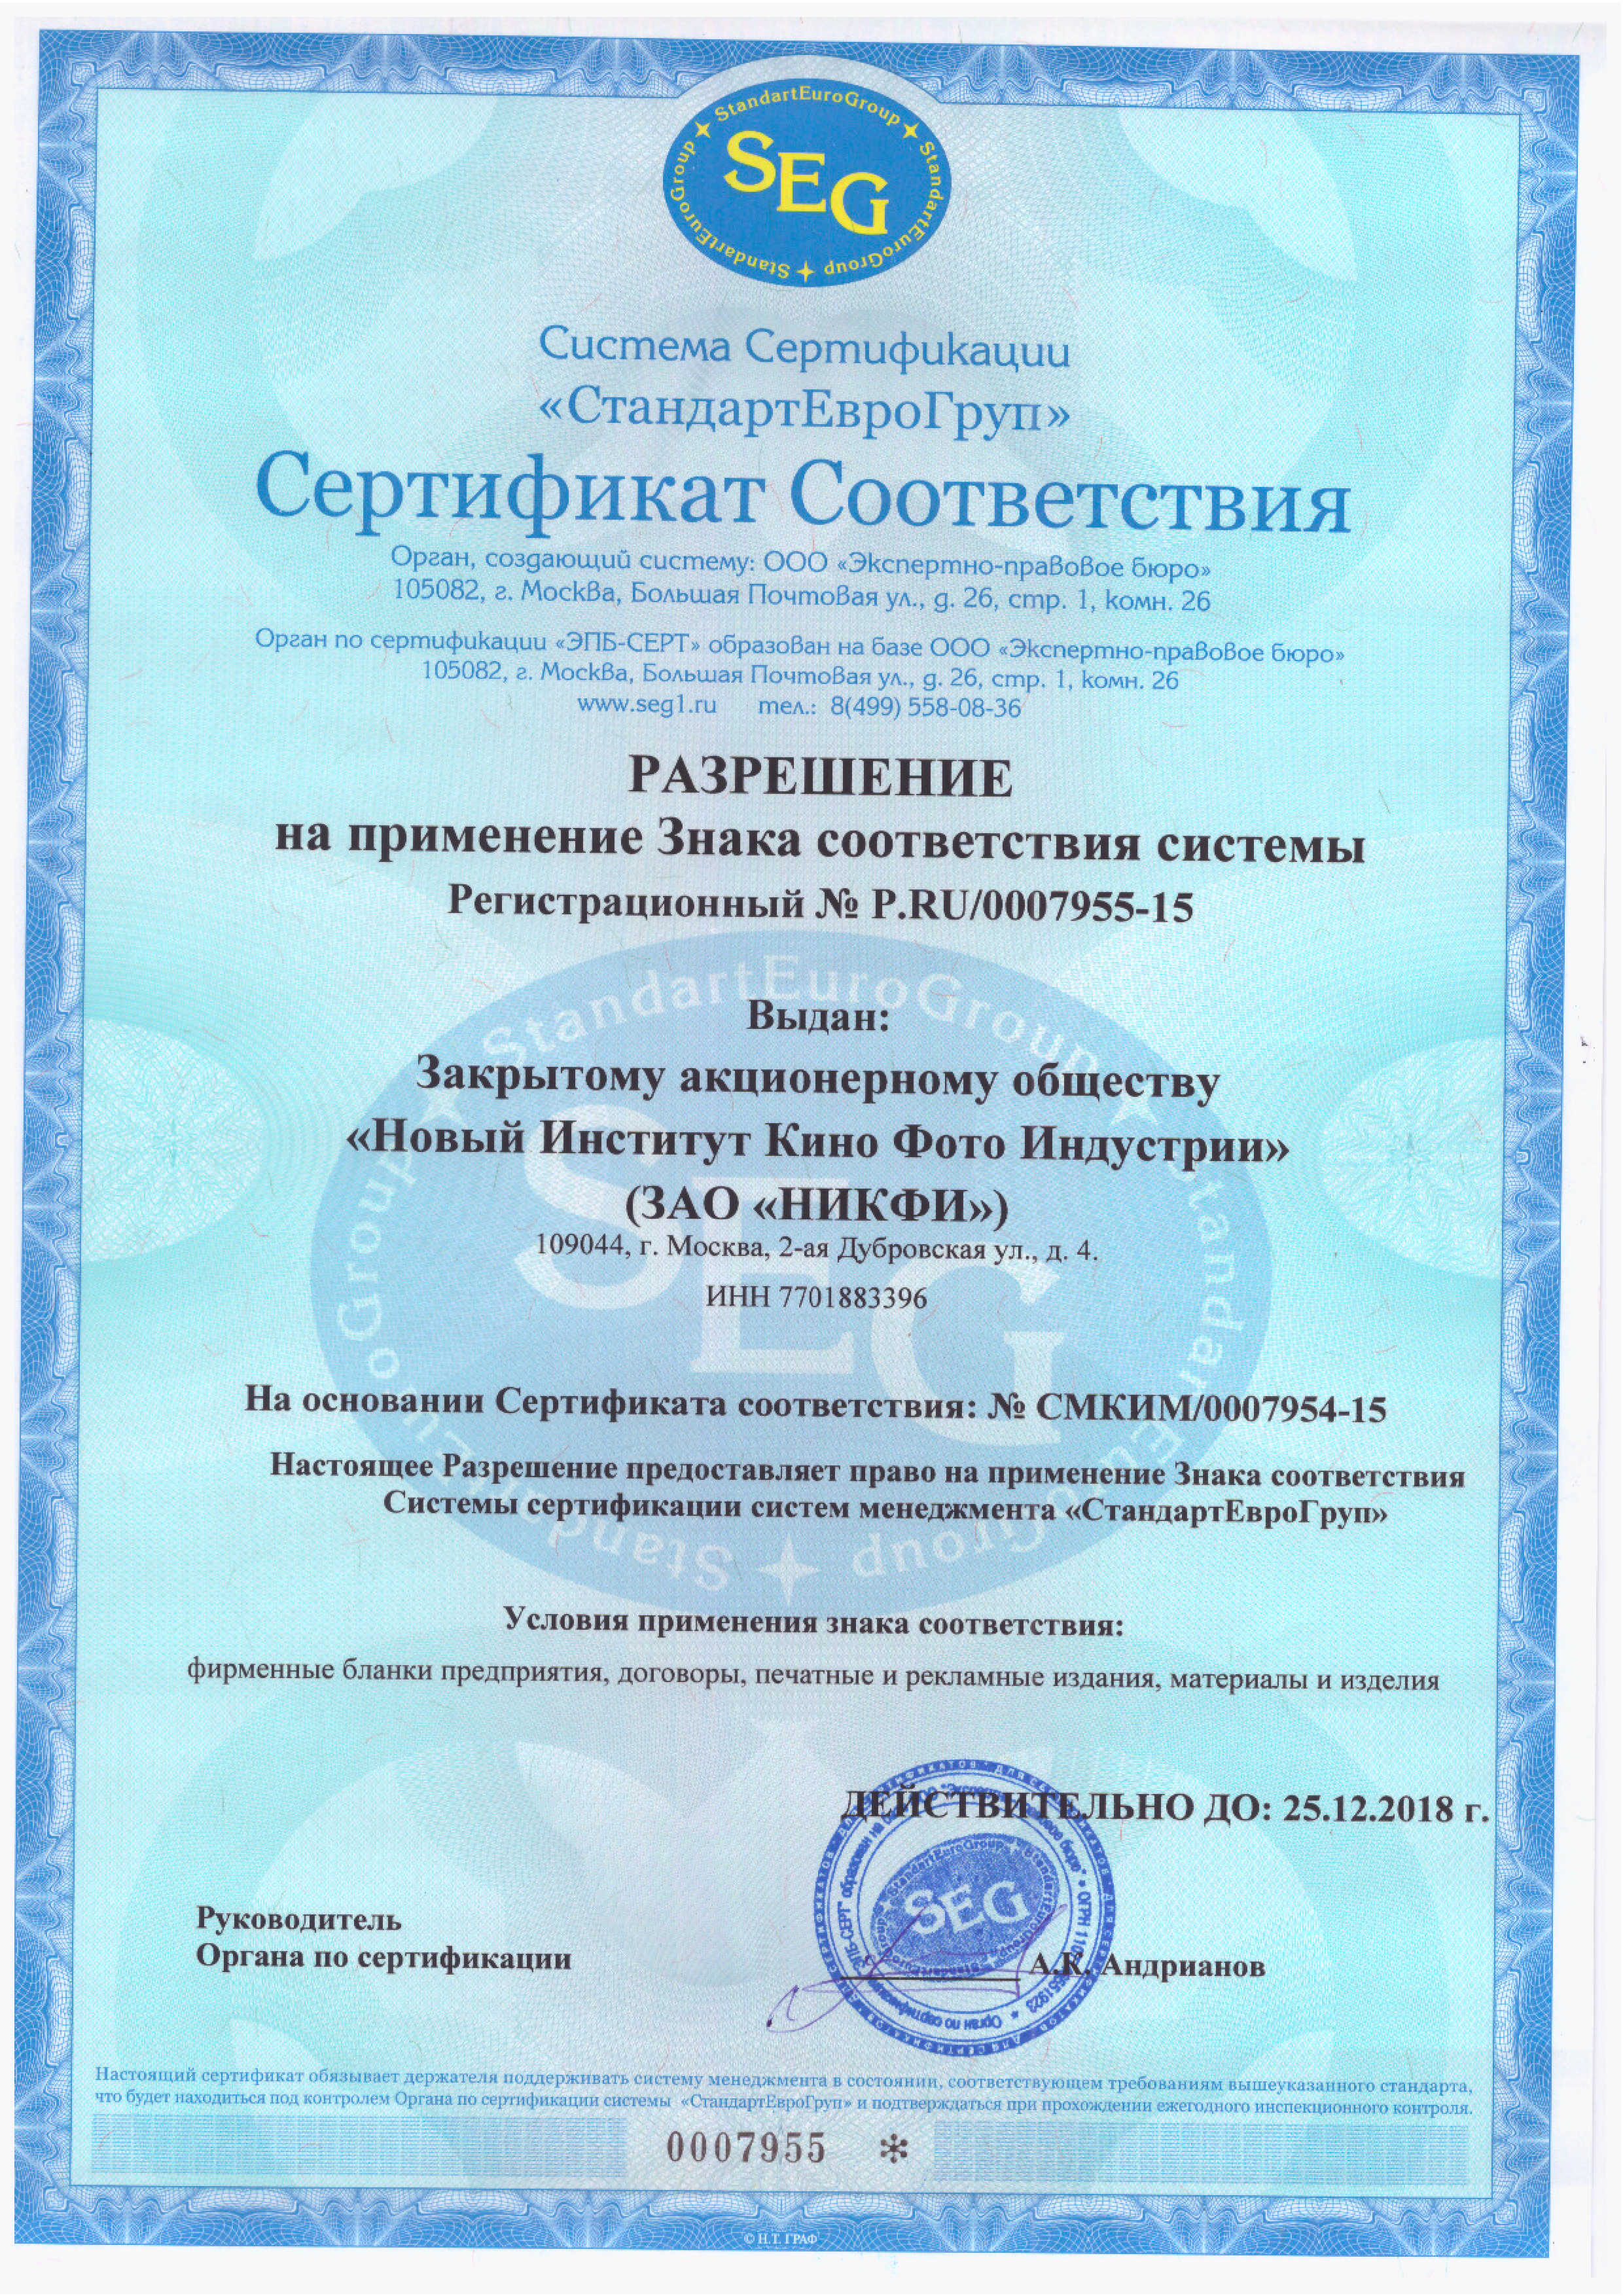 сертификат соответствия методики акваторнадо